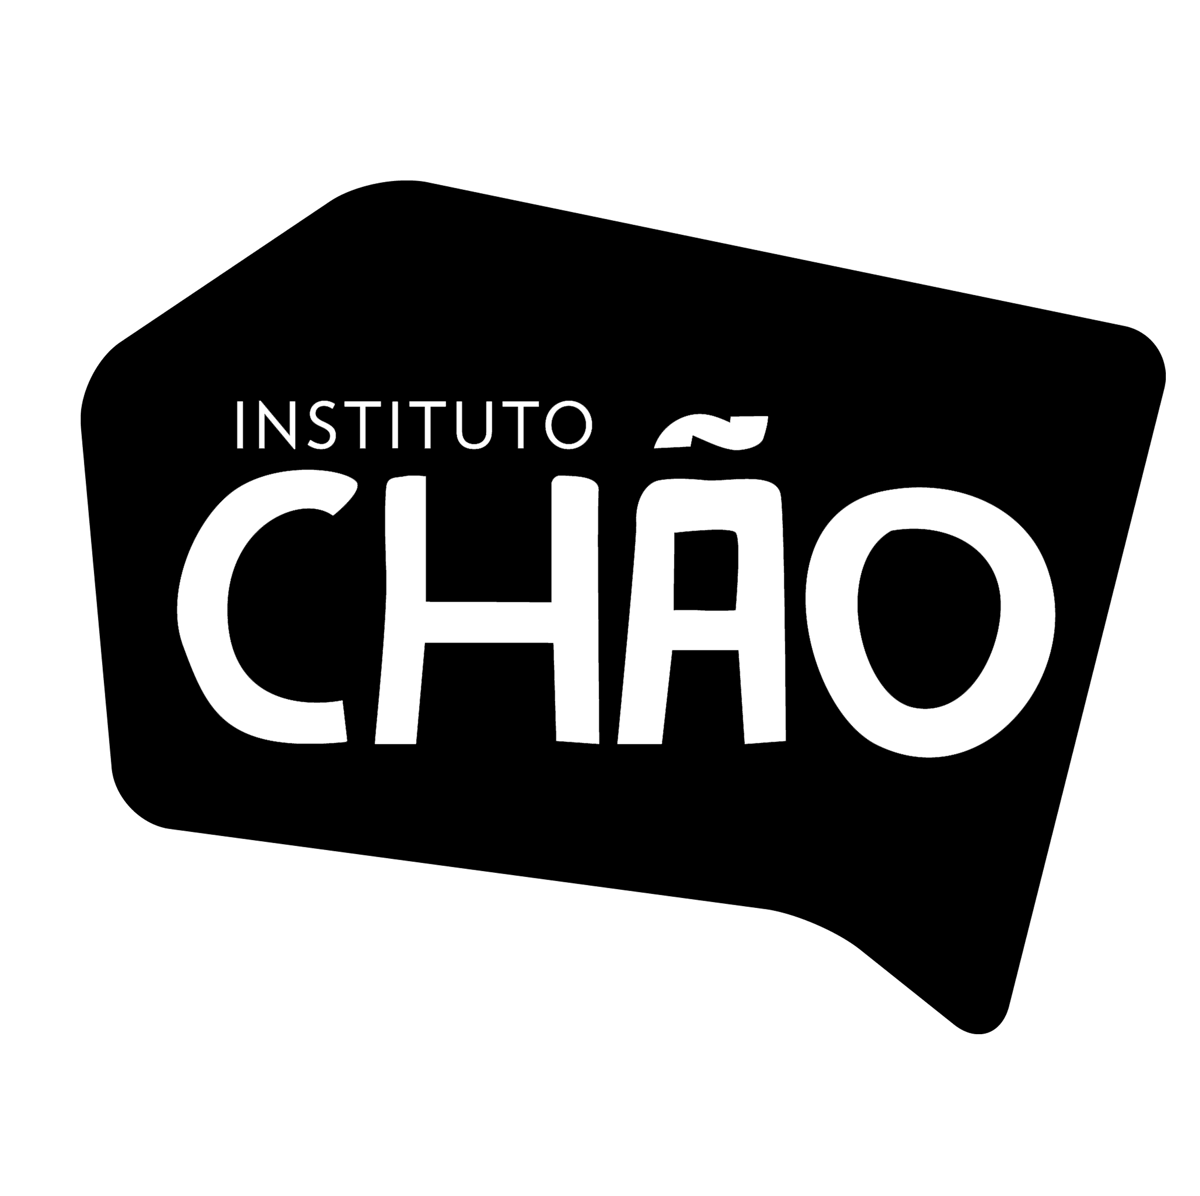 (c) Institutochao.org